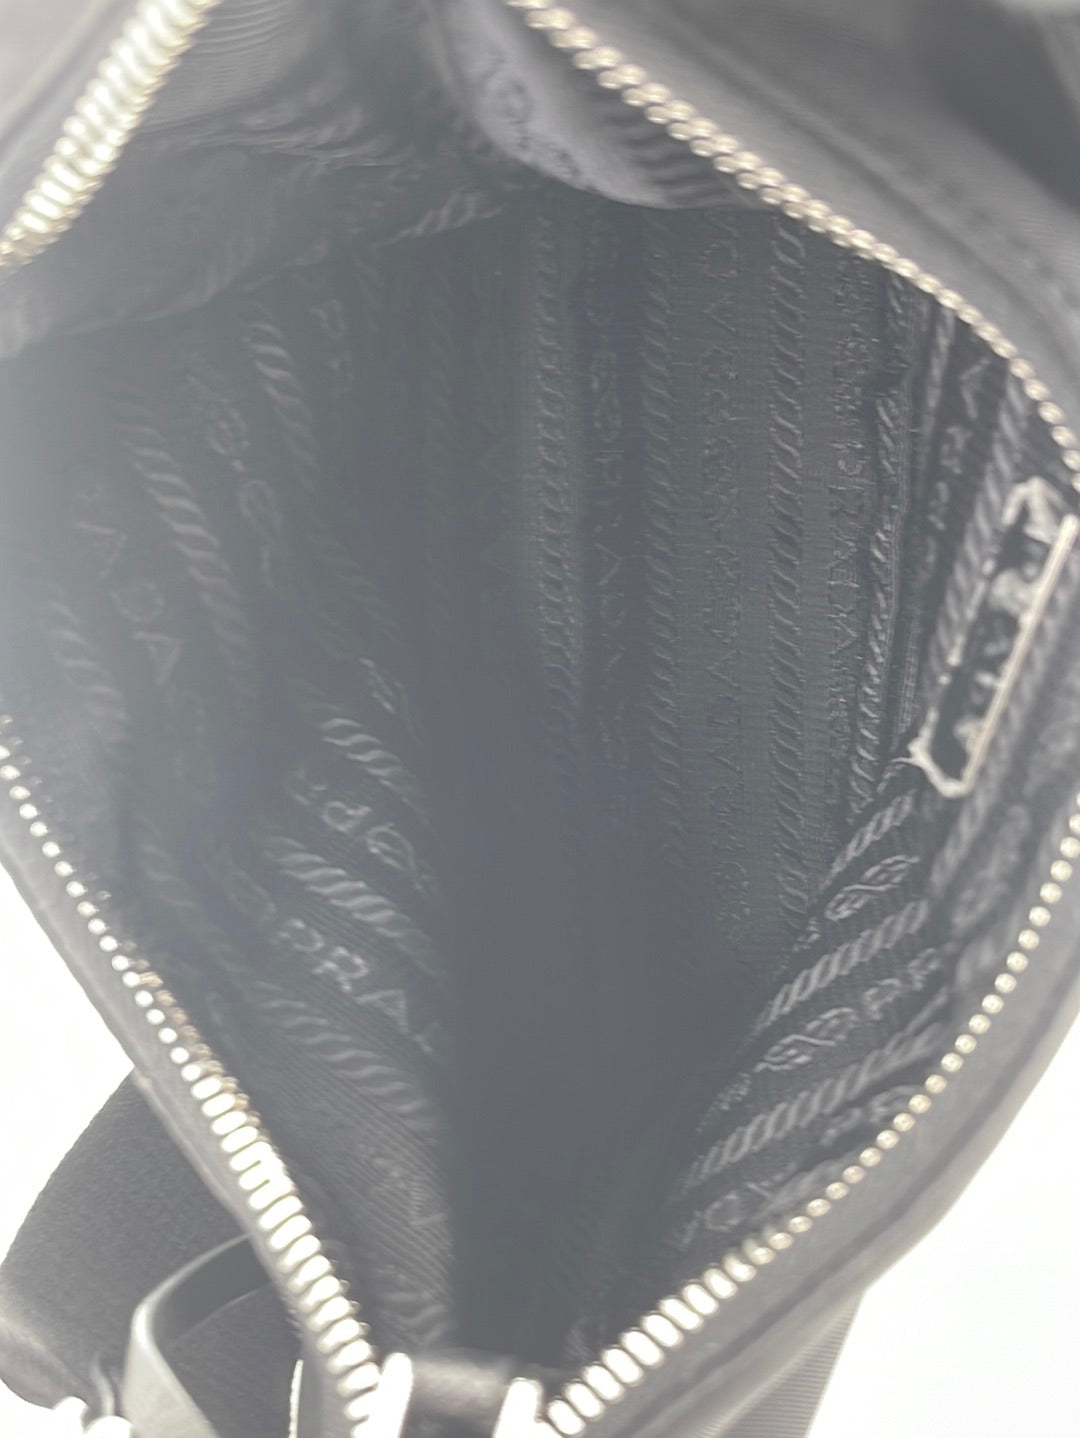 Cargo cloth crossbody bag Prada Black in Cloth - 16219533